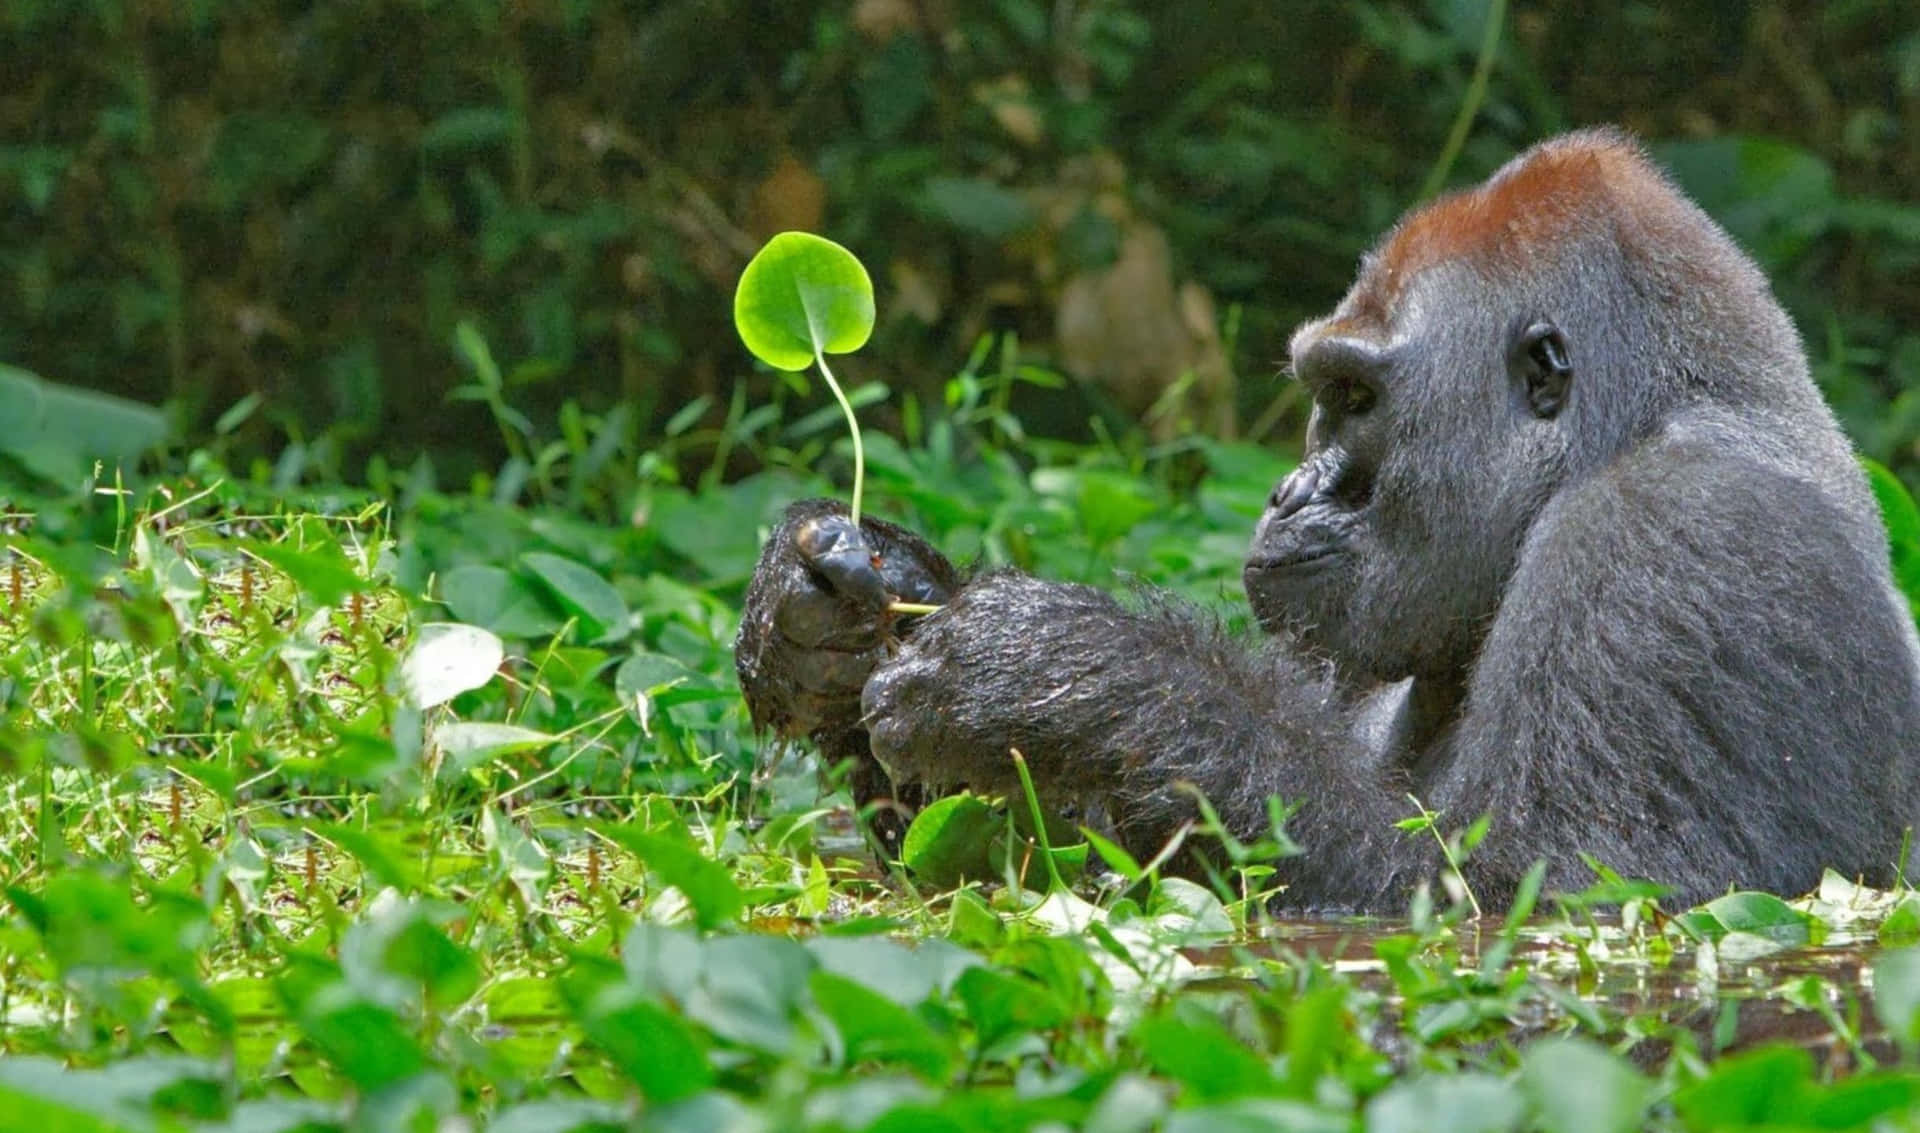 A Closeup Look at a Gorilla